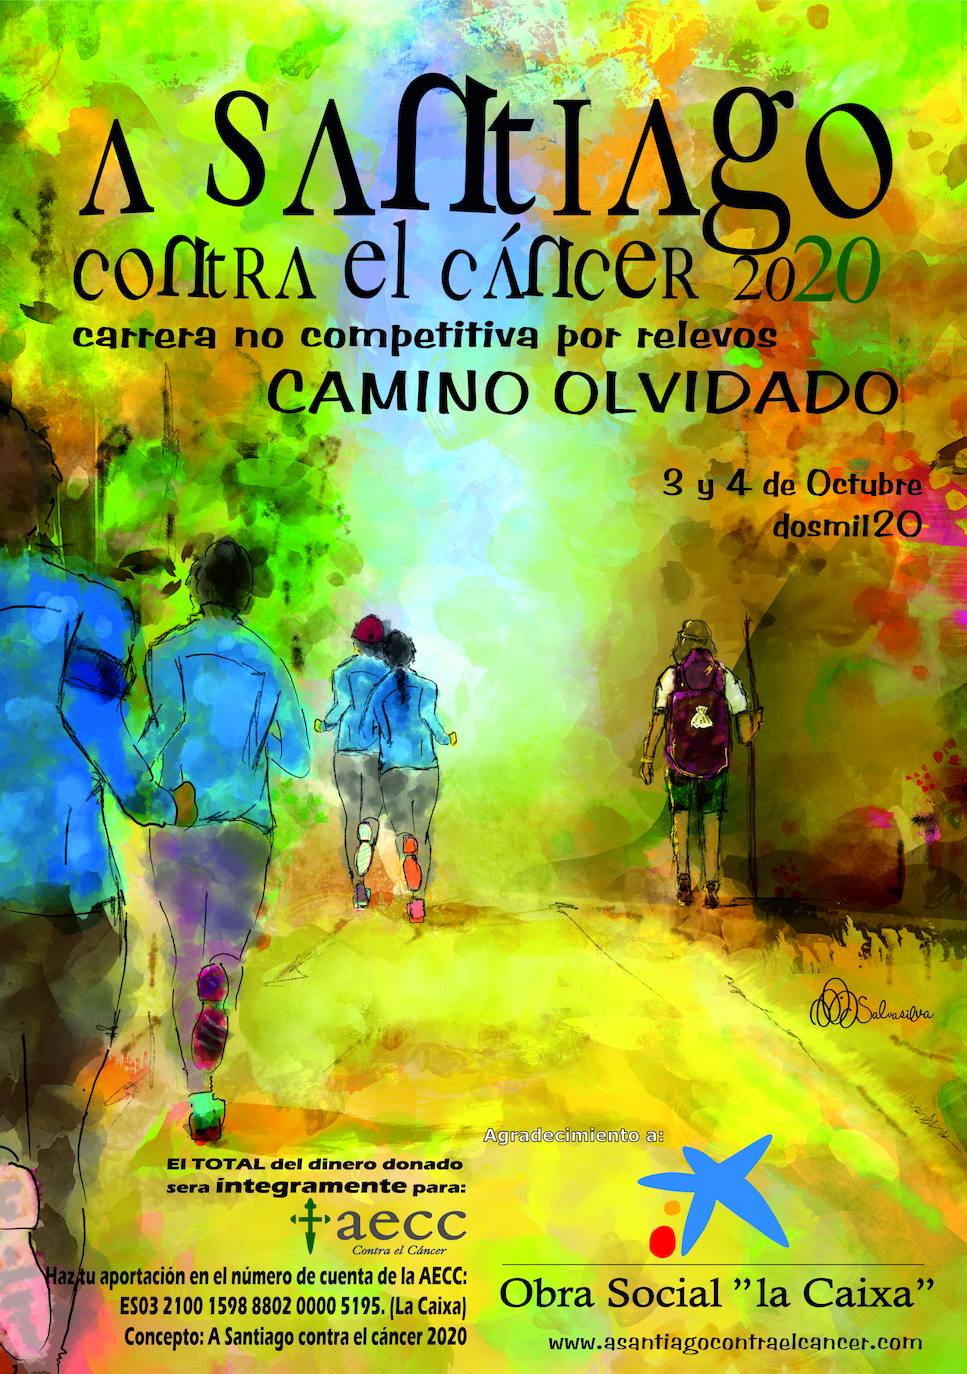 A Santiago Contra el Cáncer recorrerá los días 3 y 4 de octubre dos etapas del Camino Olvidado desde Barrillos de las Arrimadas hasta Ponferrada